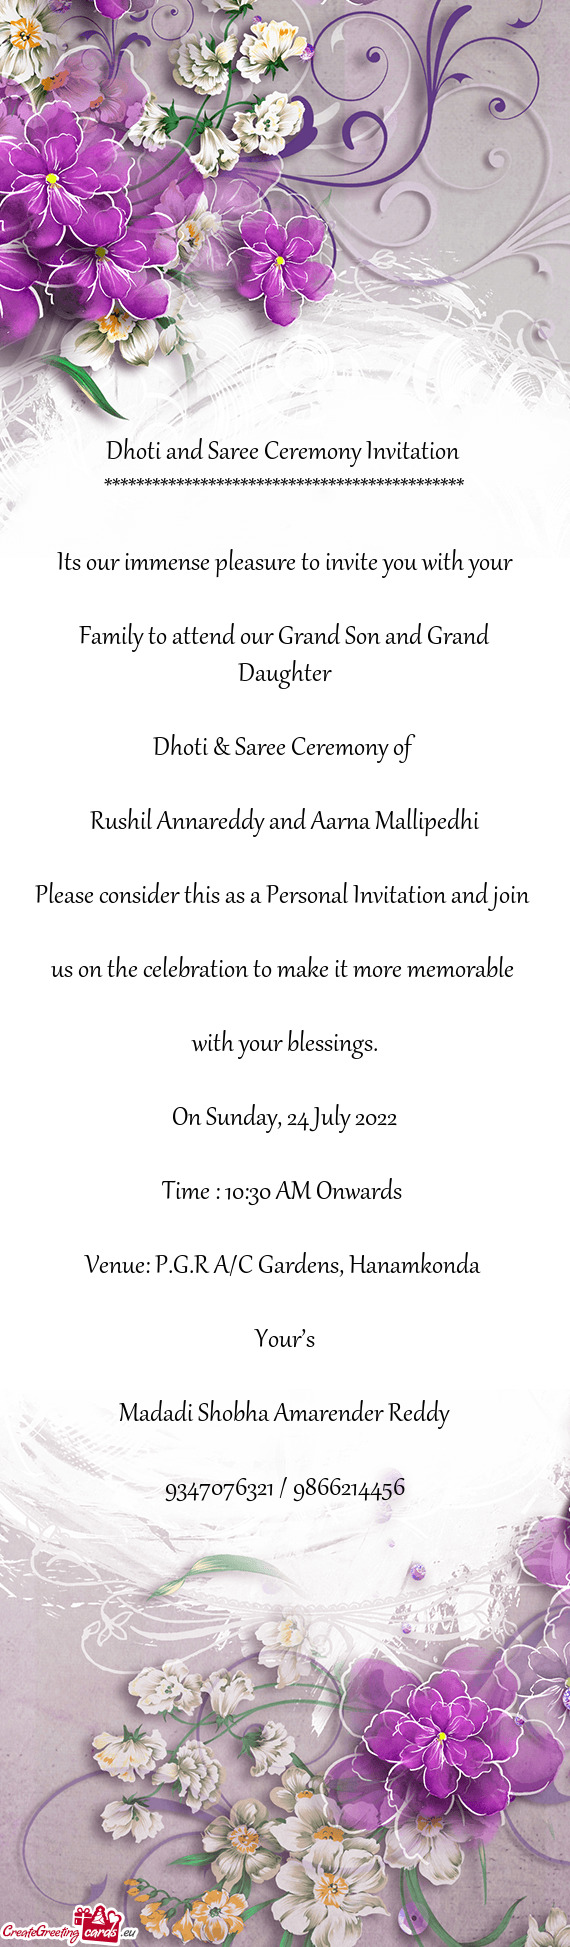 Dhoti & Saree Ceremony of